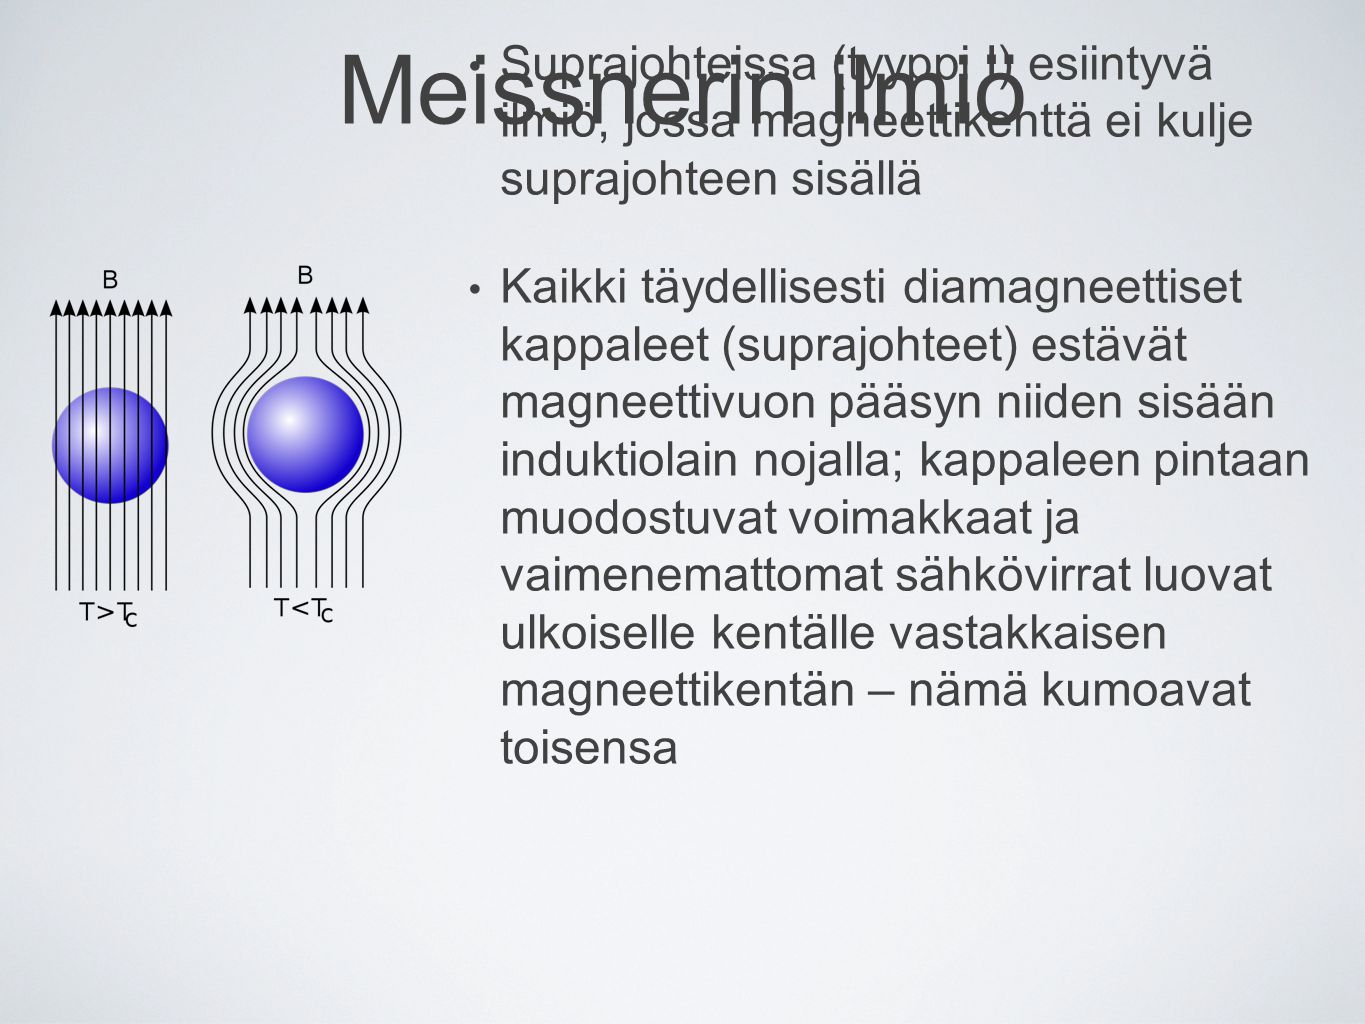 Meissnerin ilmiö Suprajohteissa (tyyppi I) esiintyvä ilmiö, jossa magneettikenttä ei kulje suprajohteen sisällä.